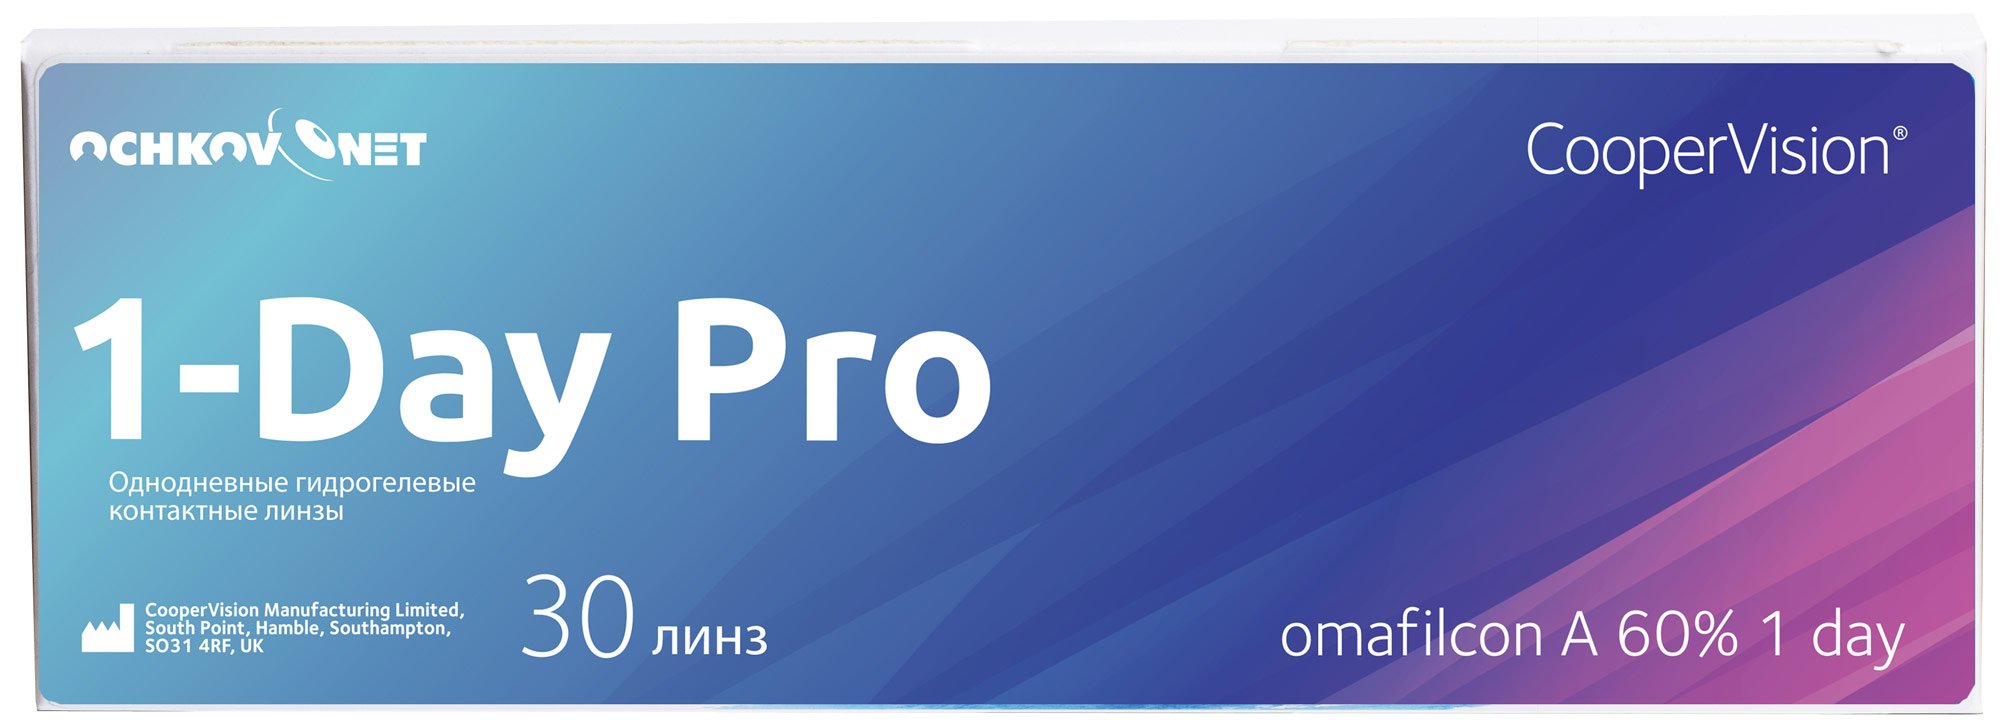 Контактные линзы Ochkov.Net 1-Day Pro 30 линз 8.7, -7  - купить